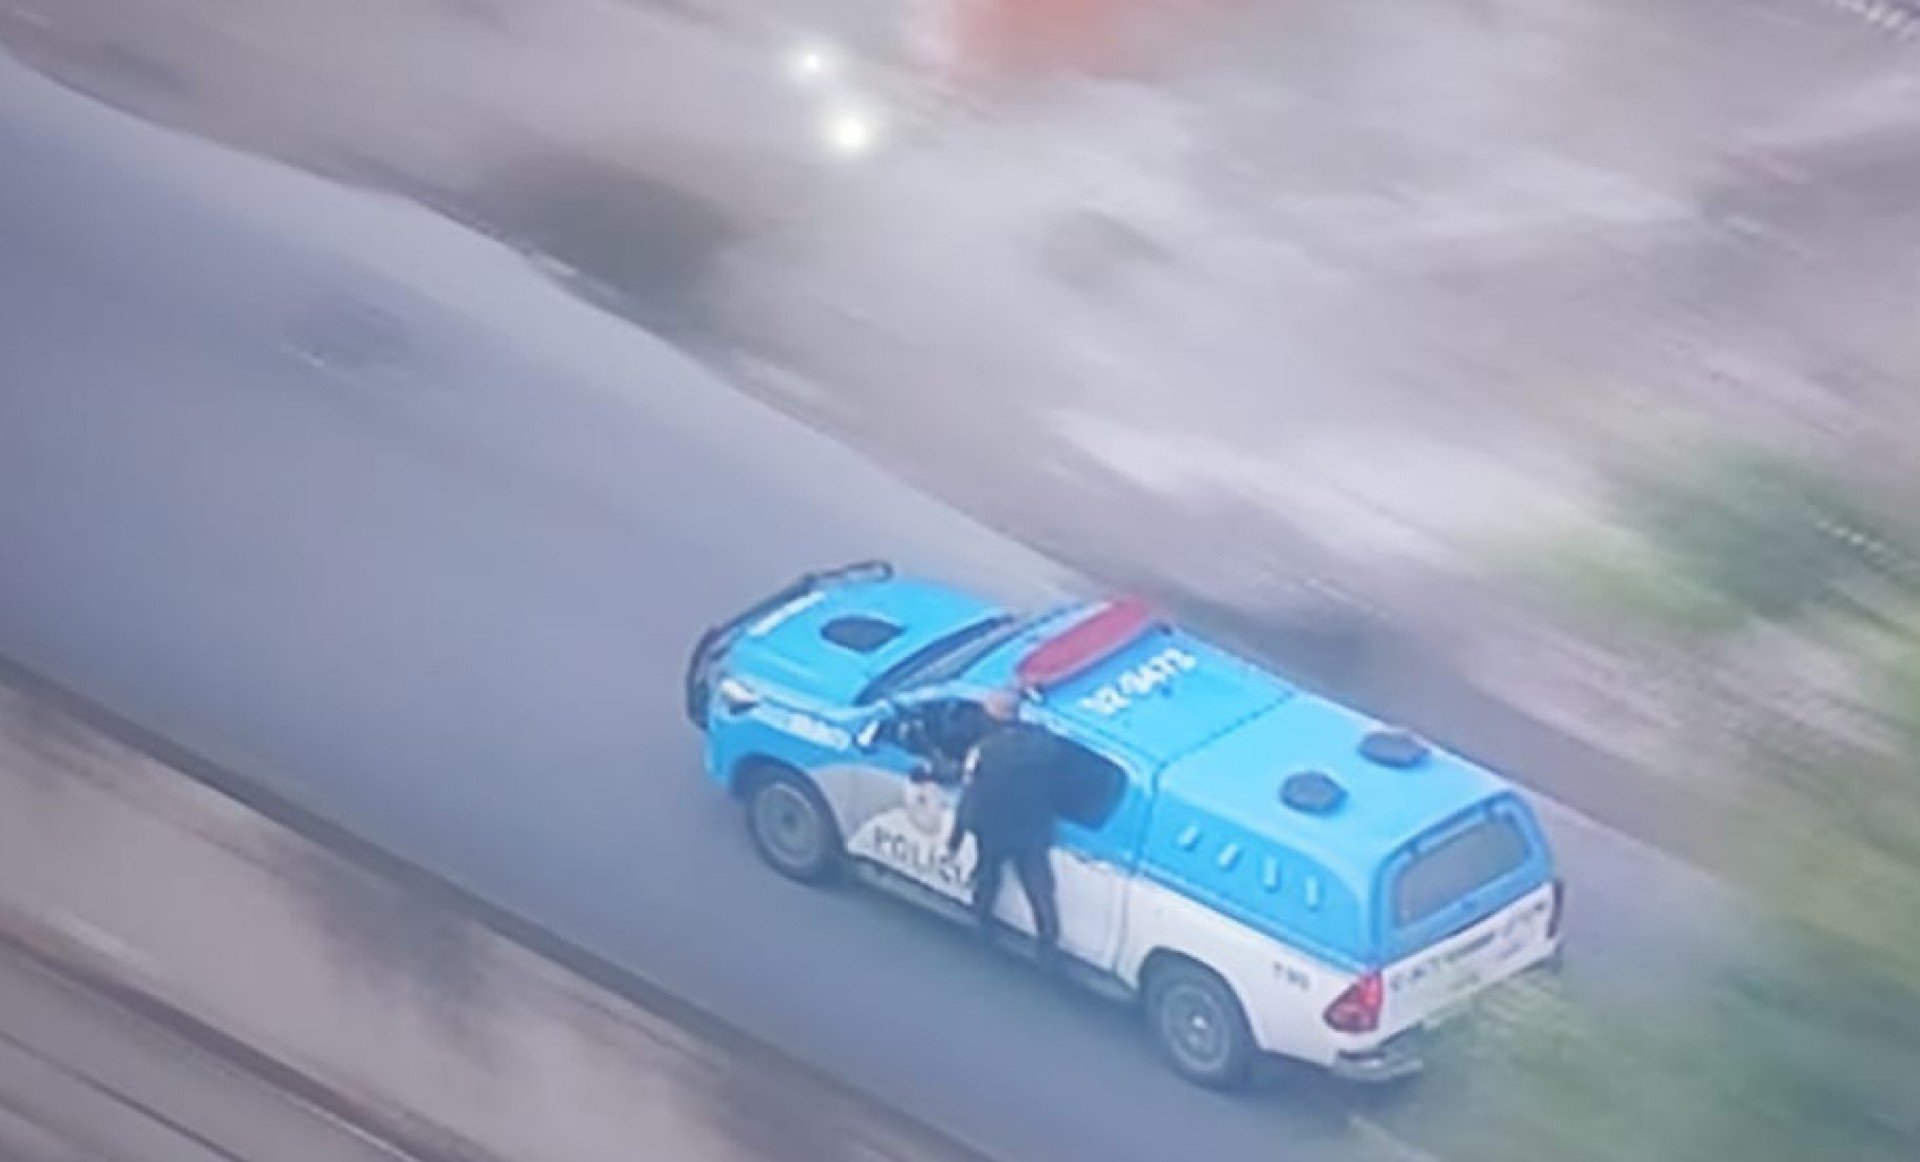 Policial é transportado do lado de fora da viatura durante socorro a feridos em confronto no Morro do Juramento, na Zona Norte do Rio - Reprodução/ TV Globo